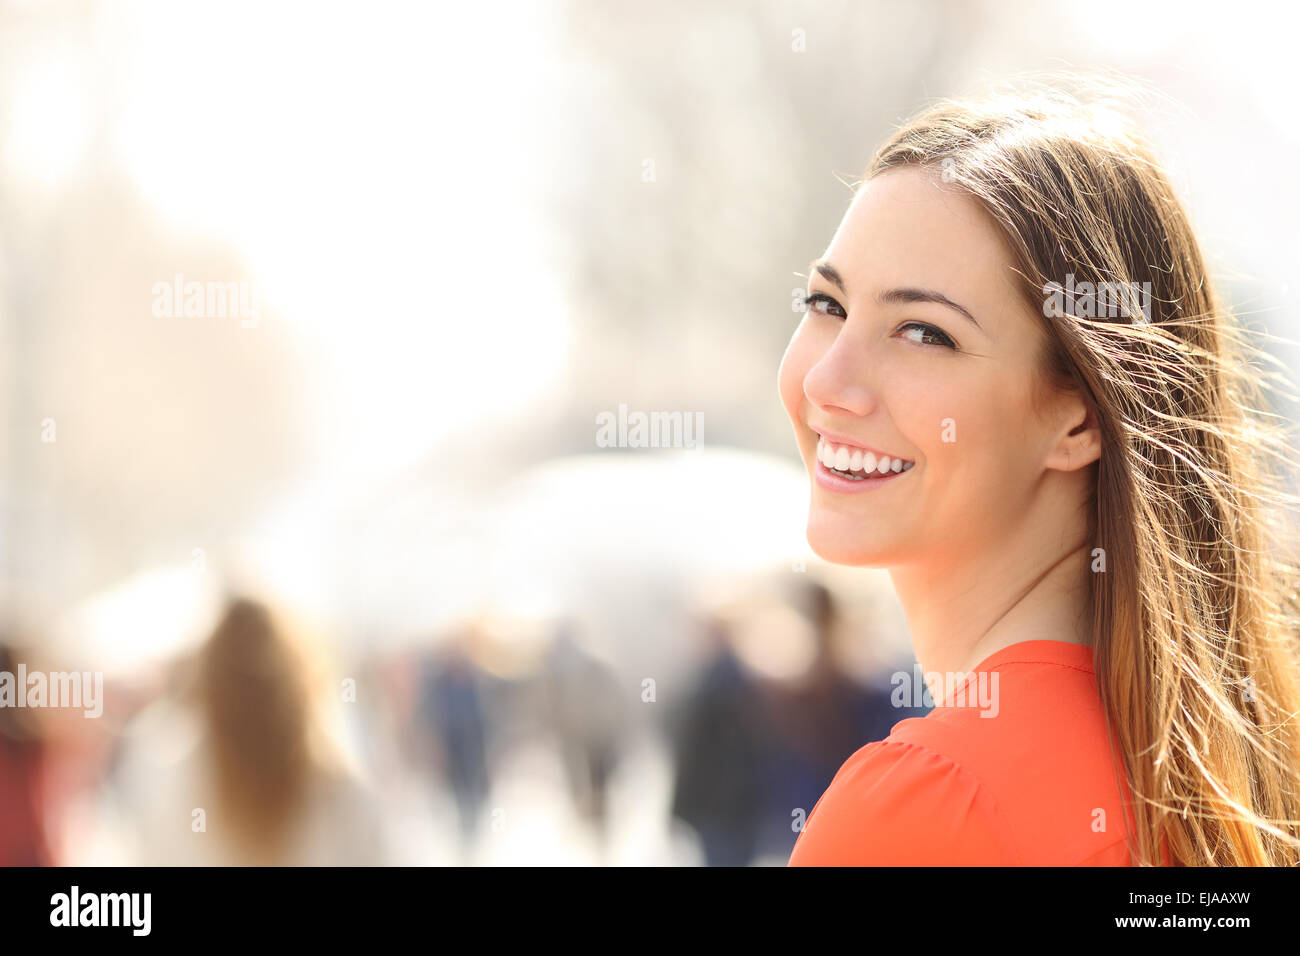 Mujer de belleza con sonrisa perfecta y dientes blancos caminando por la calle y mirando a la cámara Foto de stock